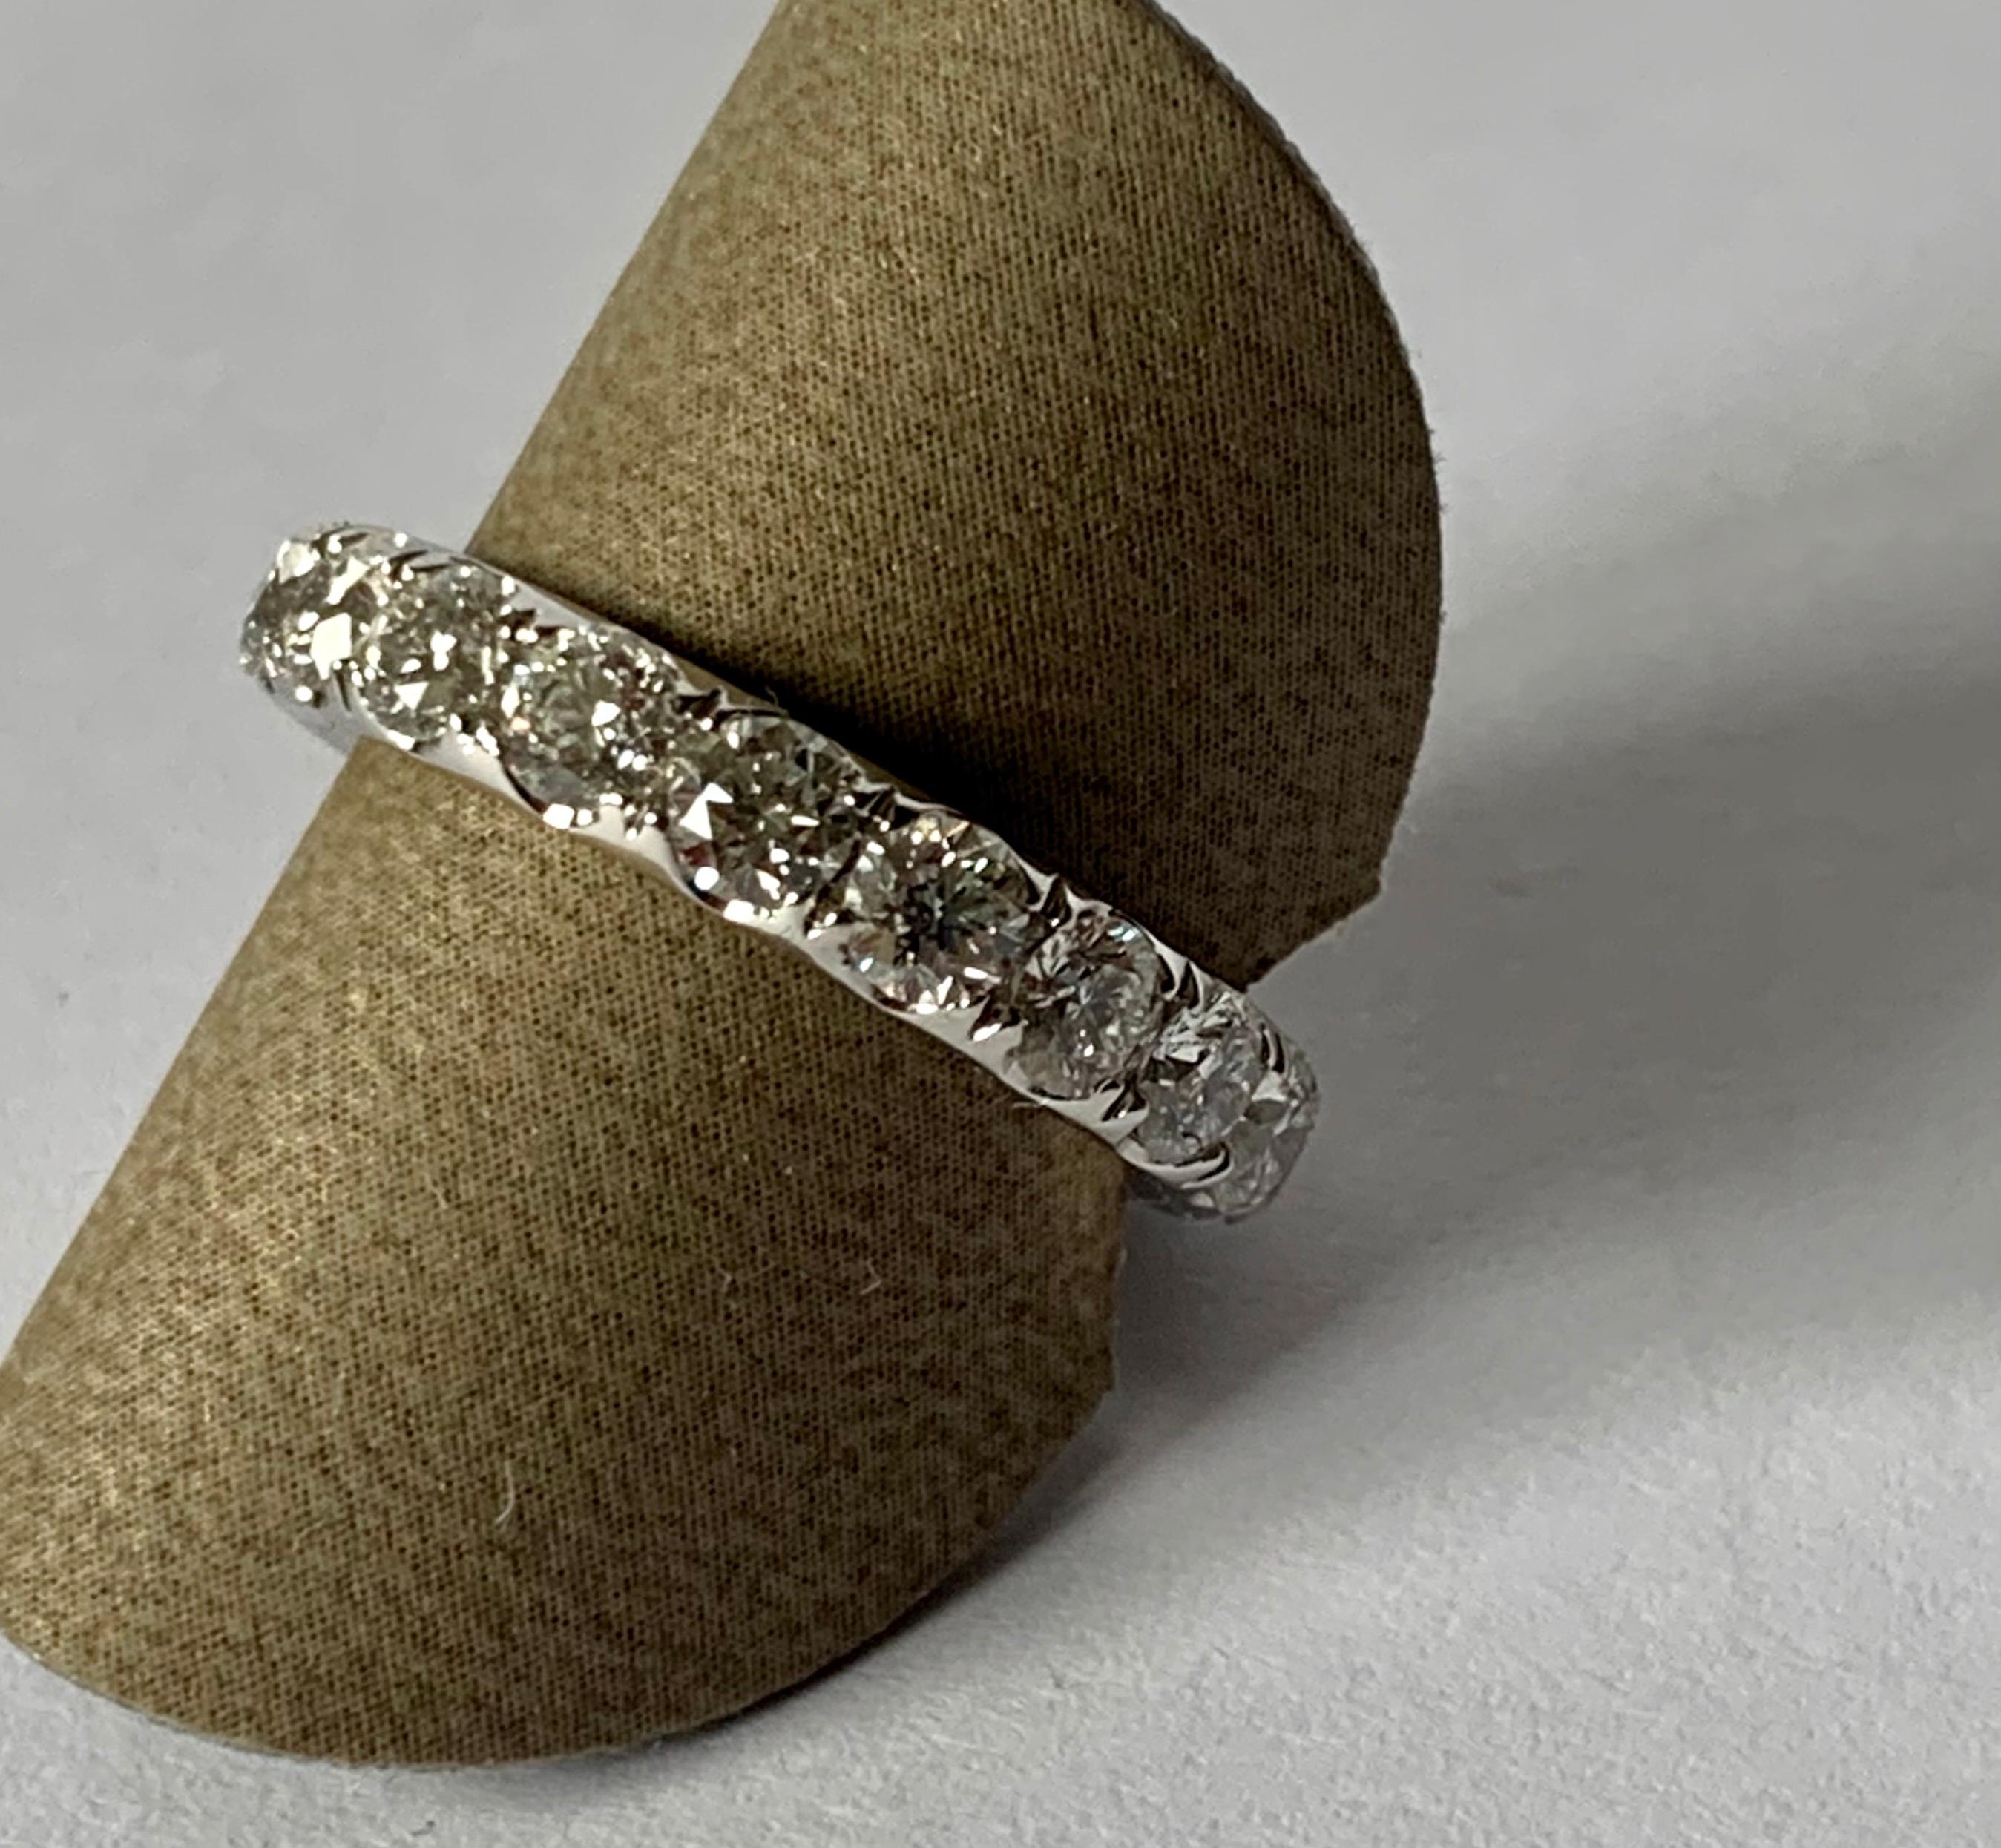 L'anneau d'éternité, également connu sous le nom d'anneau de l'infini, est conçu comme un symbole de l'amour éternel ainsi que de l'